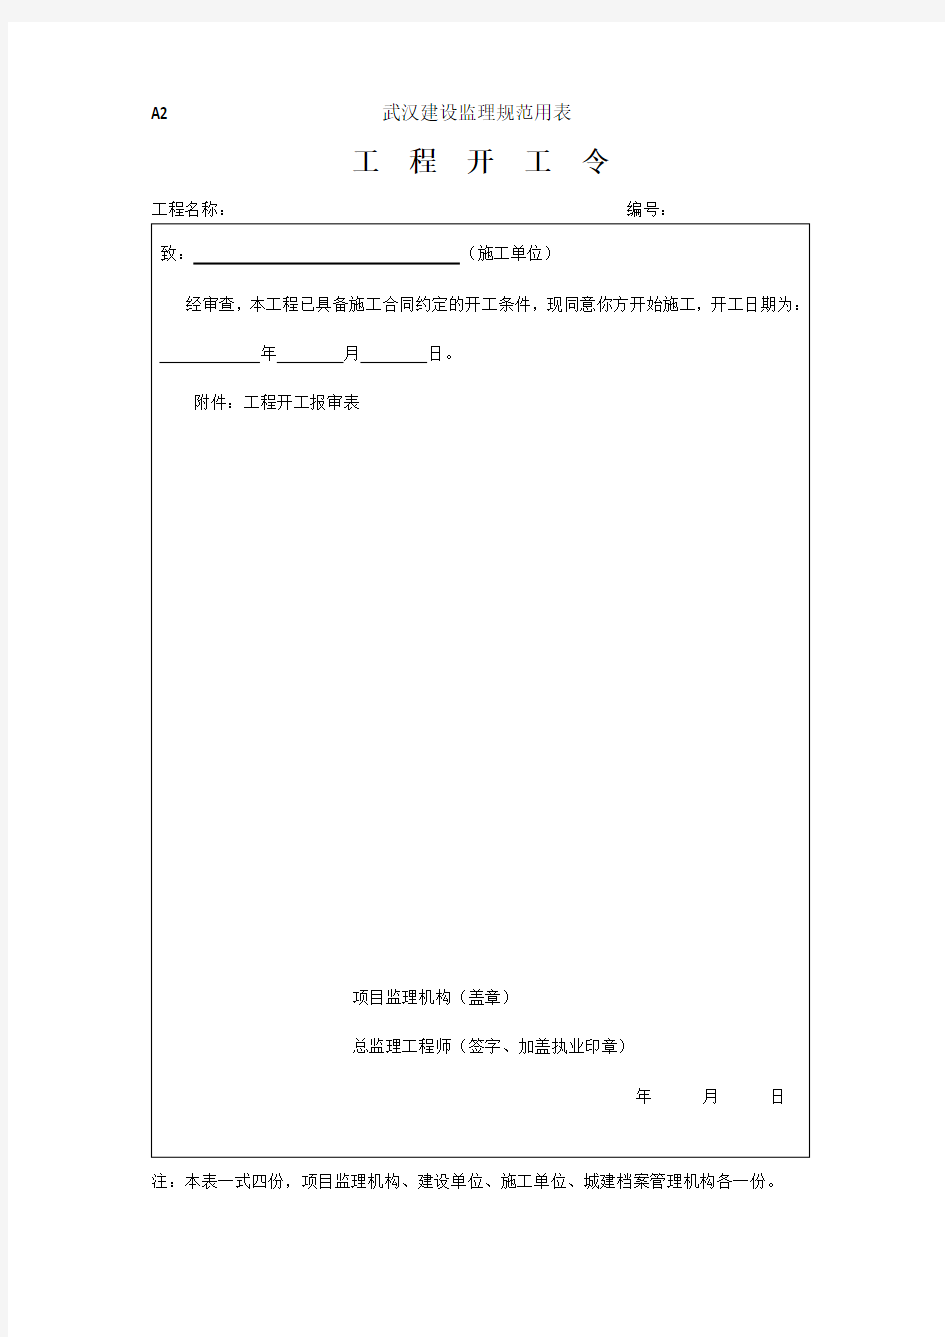 武汉建设监理规范用表(最新表格)